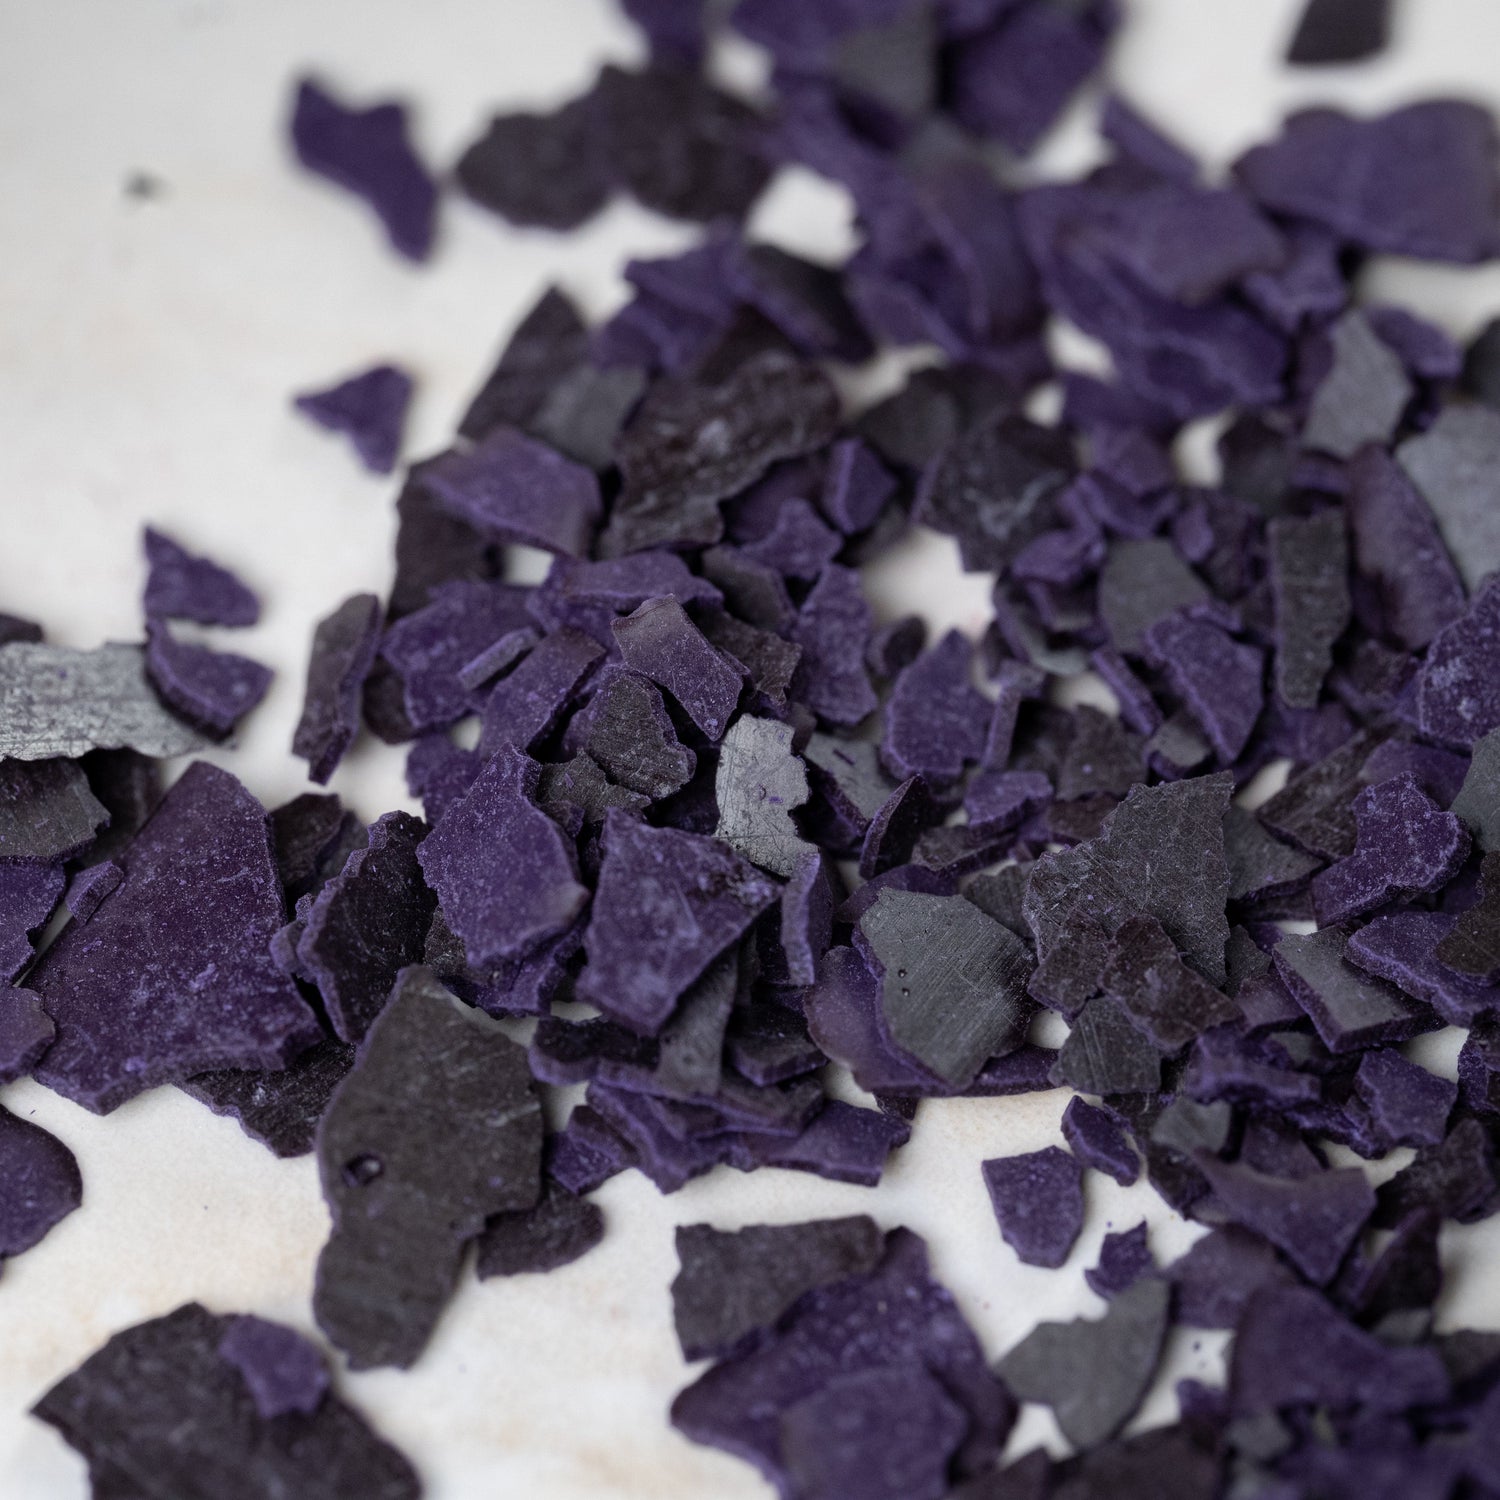 Violet dye chips. Candle making dye. Wax melt dye. Wax dye